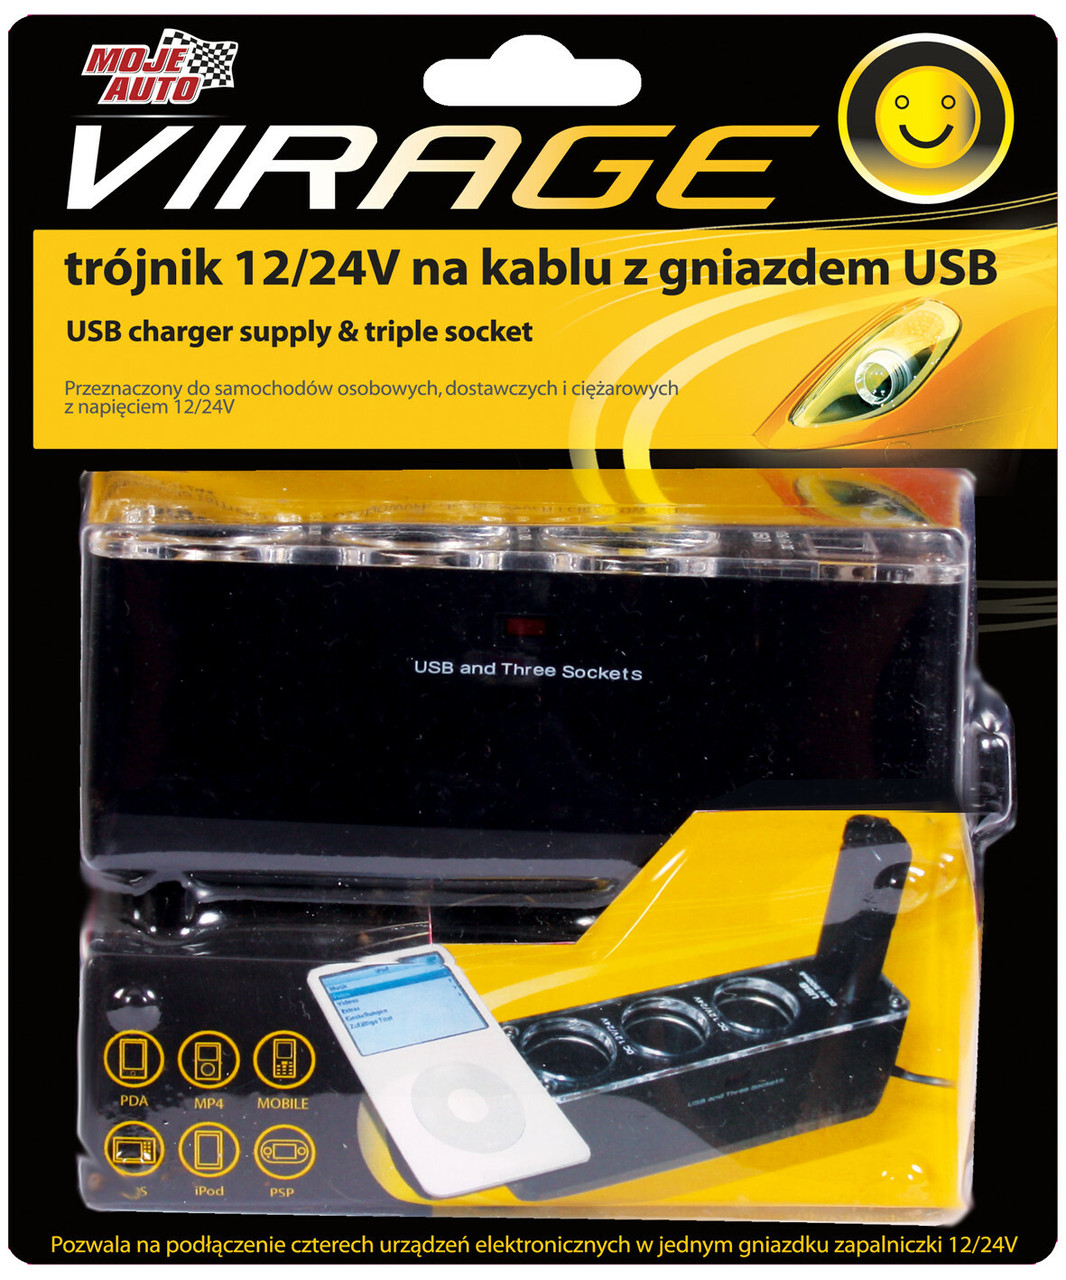 Портовий розгалужувач  12/24V + USB VIRAGE 93-019